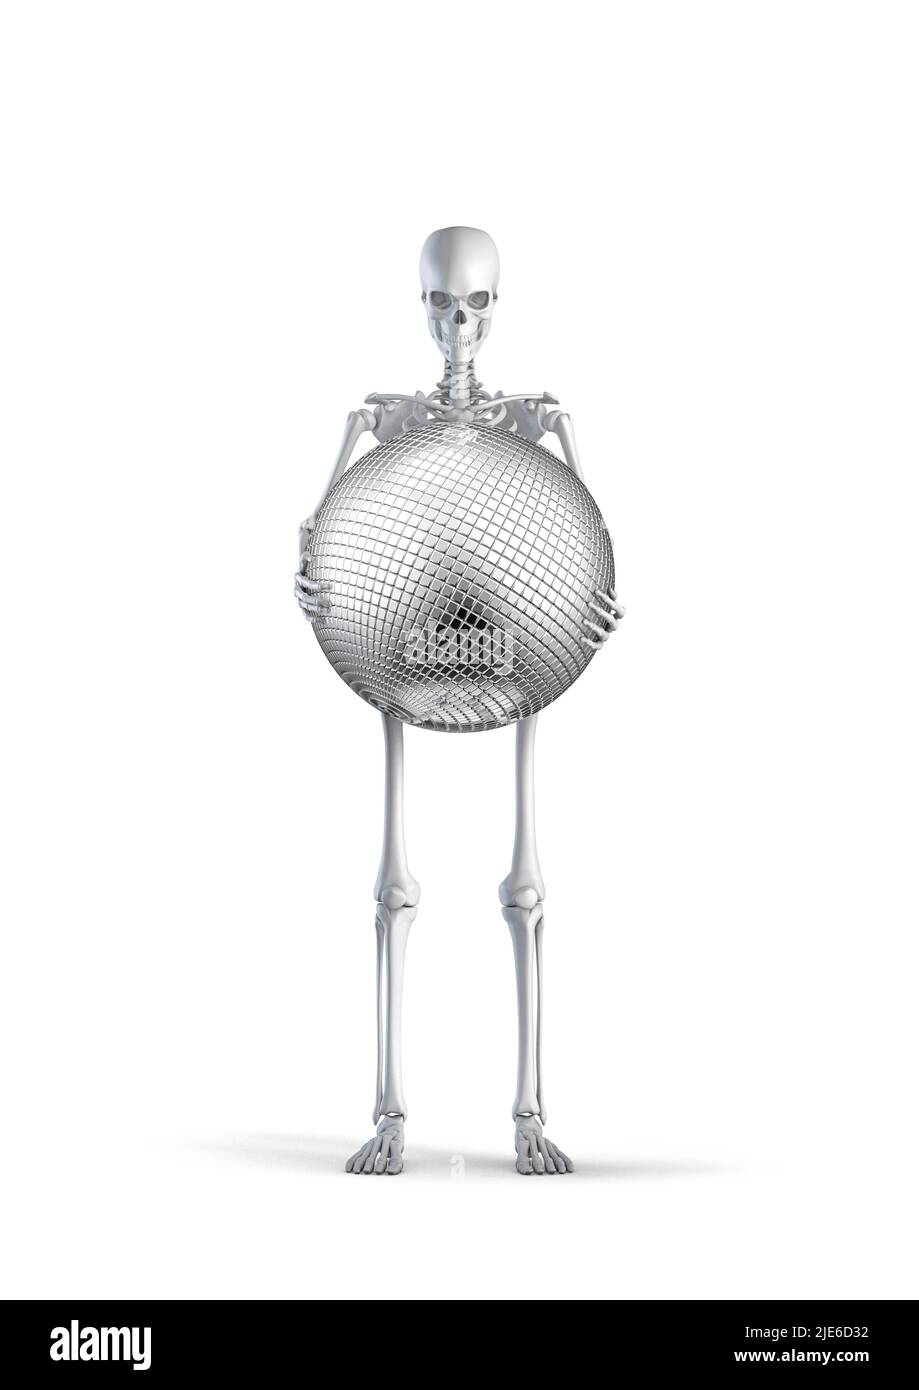 Squelette avec boule disco - 3D illustration du squelette humain masculin tenant une boule miroir brillante isolée sur fond blanc de studio Banque D'Images